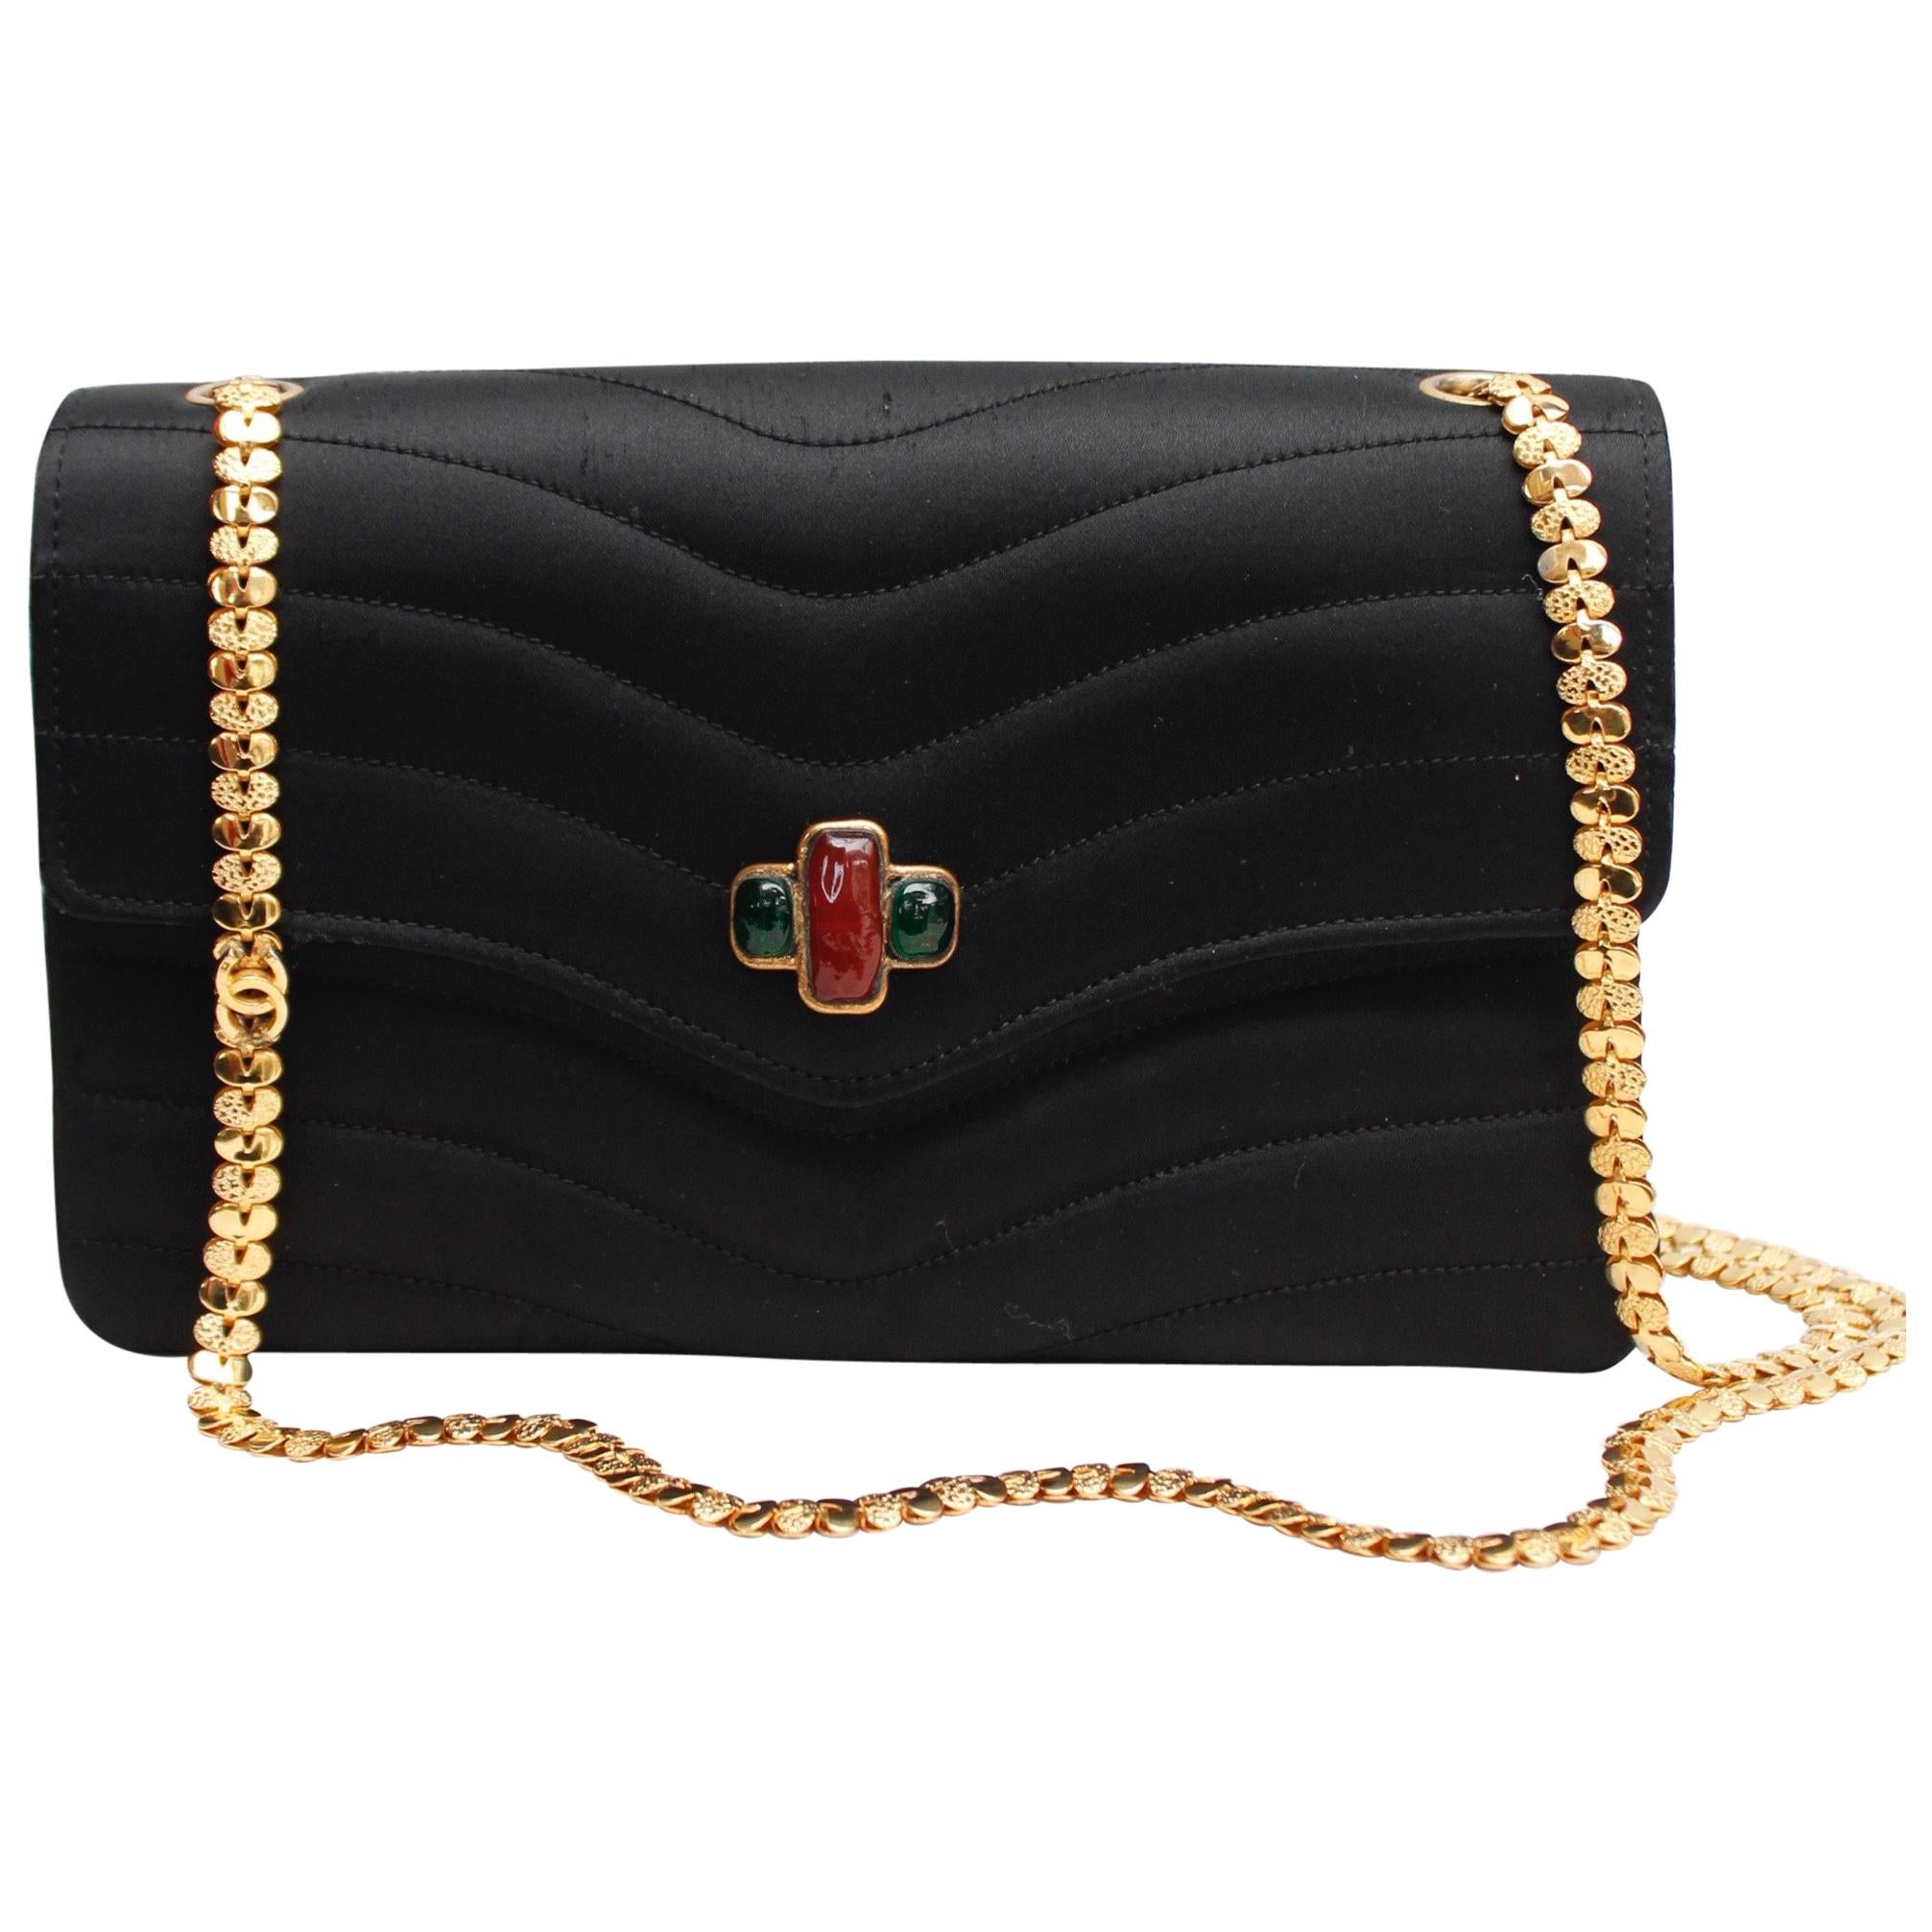 Chanel elegant evening jewel bag in black satin For Sale